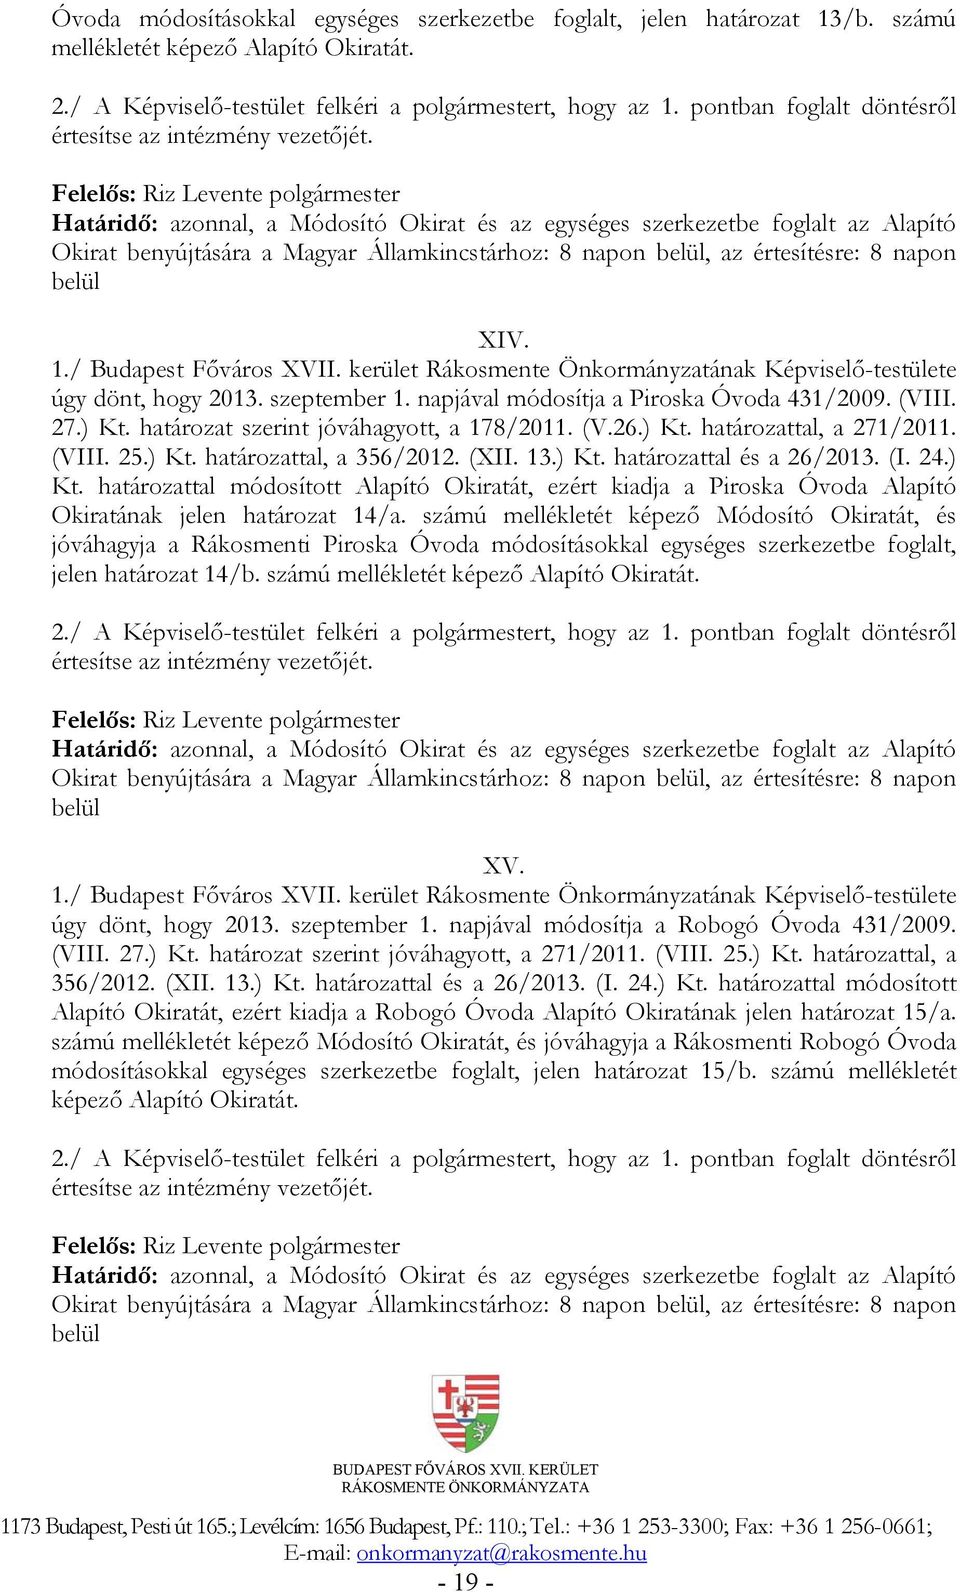 (XII. 13.) Kt. határozattal és a 26/2013. (I. 24.) Kt. határozattal módosított Alapító Okiratát, ezért kiadja a Piroska Óvoda Alapító Okiratának jelen határozat 14/a.